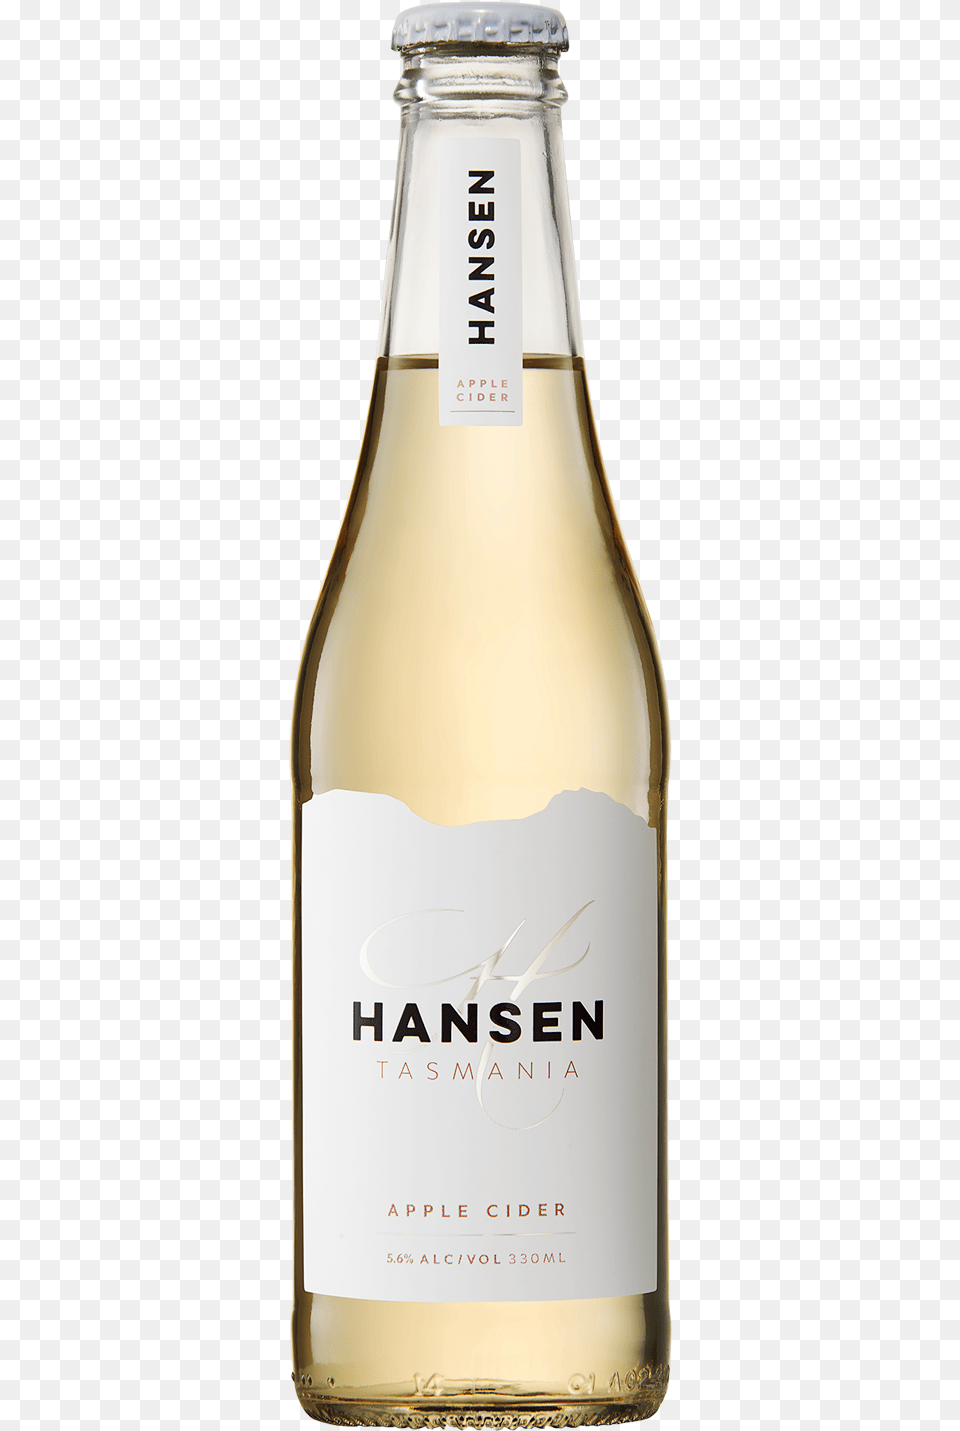 Hansen Apple Cider 330ml Cider, Alcohol, Beer, Beverage, Bottle Free Png Download